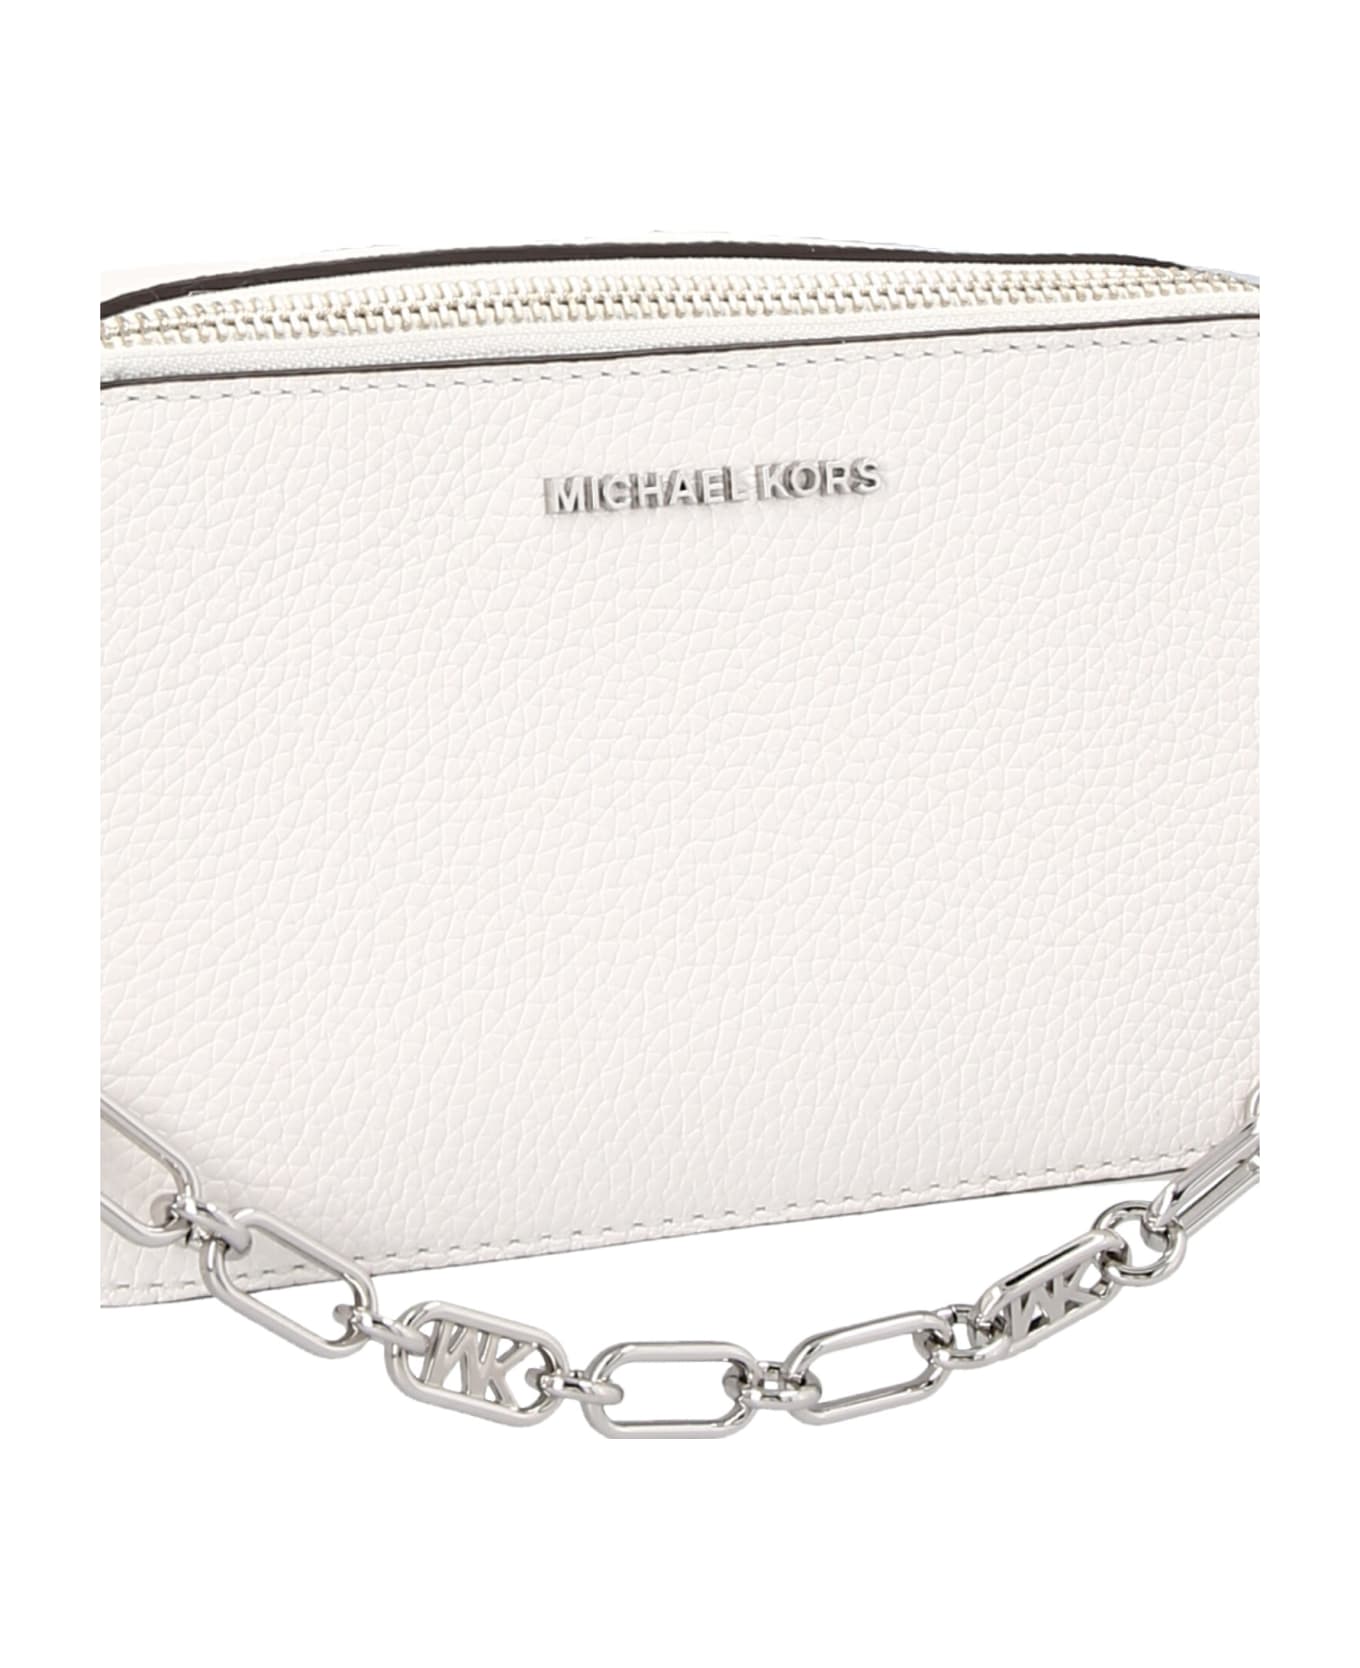 Michael Kors Logo Crossbody Bag - White